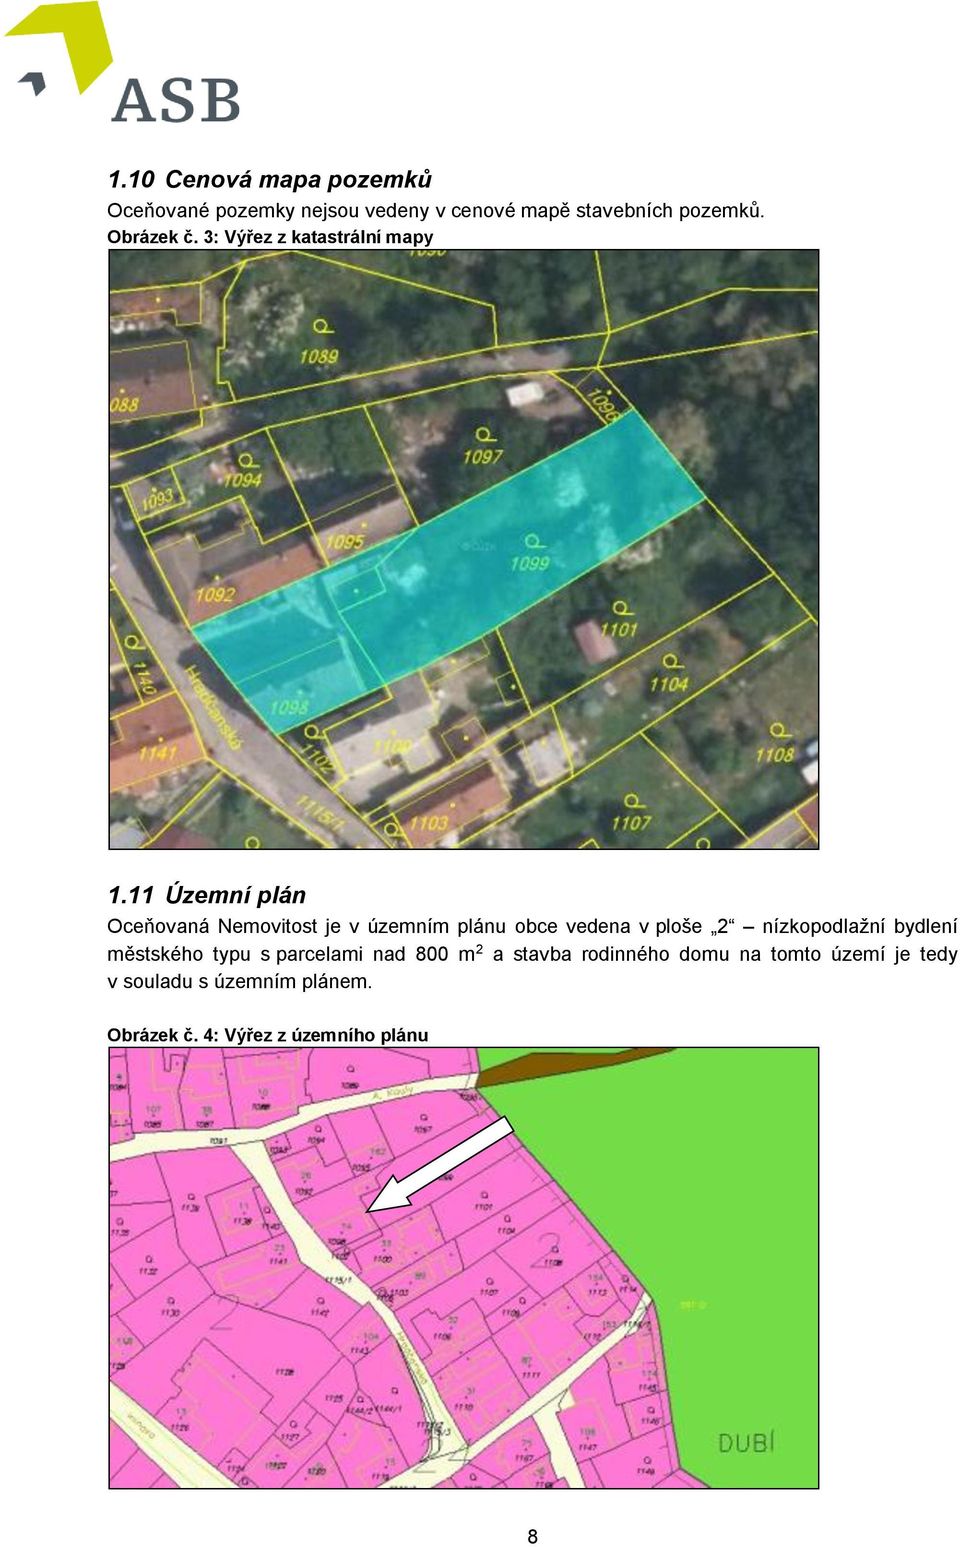 11 Územní plán Oceňovaná Nemovitost je v územním plánu obce vedena v ploše 2 nízkopodlažní